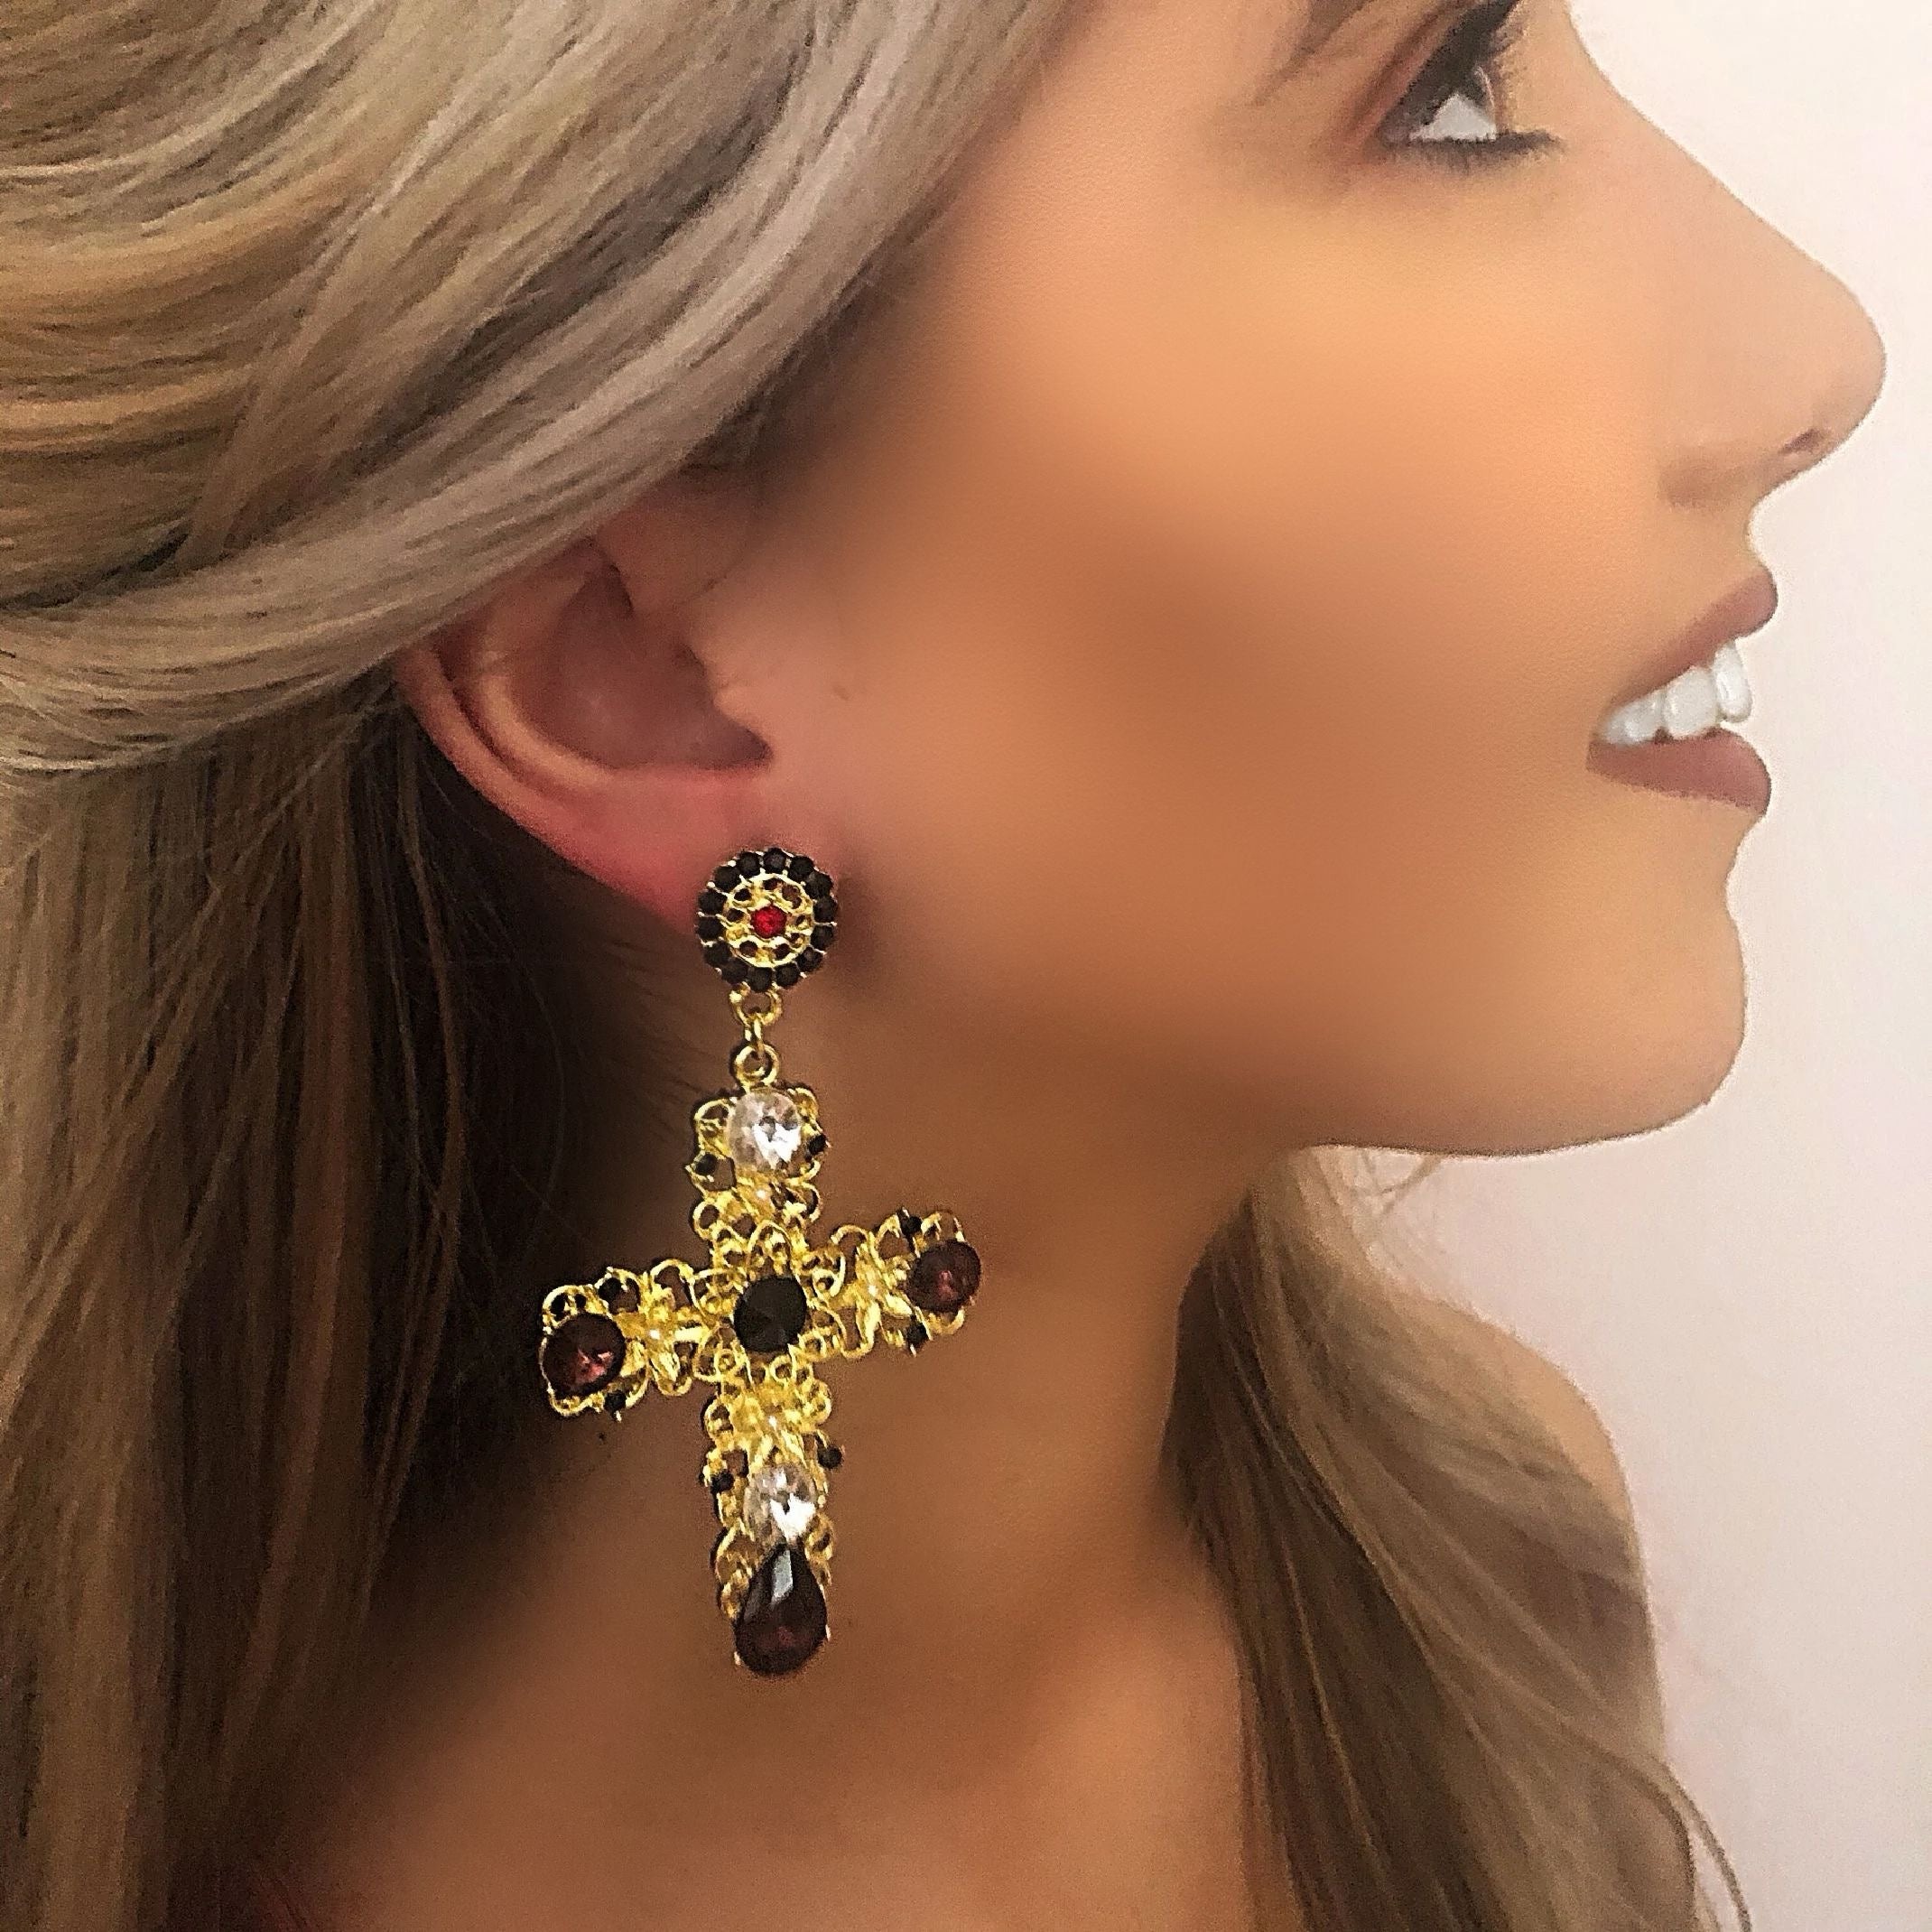 Cross earrings with wine jewels 